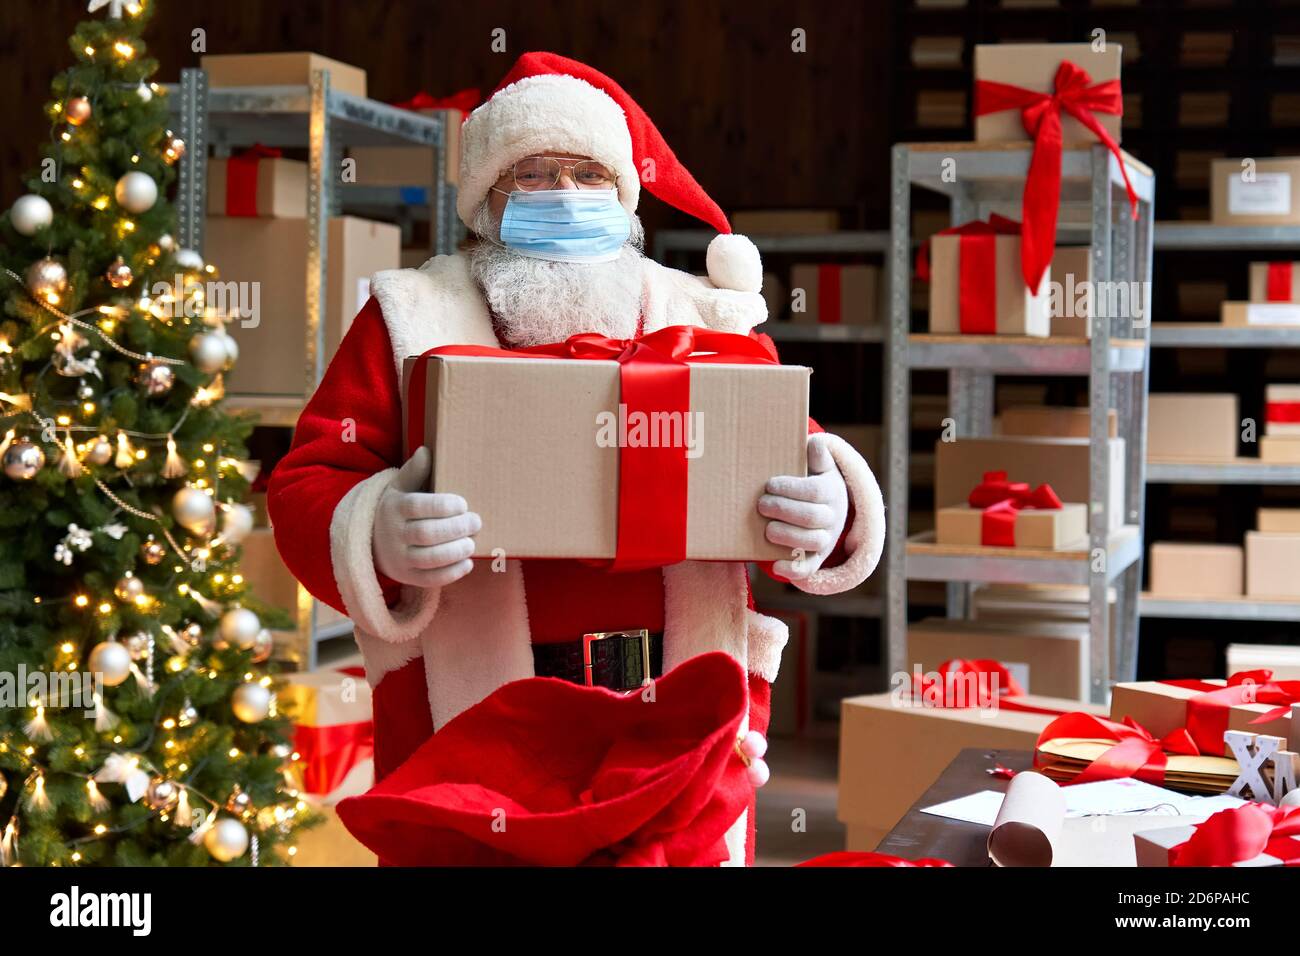 Weihnachtsmann trägt Kostüm Gesichtsmaske hält Weihnachtsgeschenke in der Werkstatt. Stockfoto